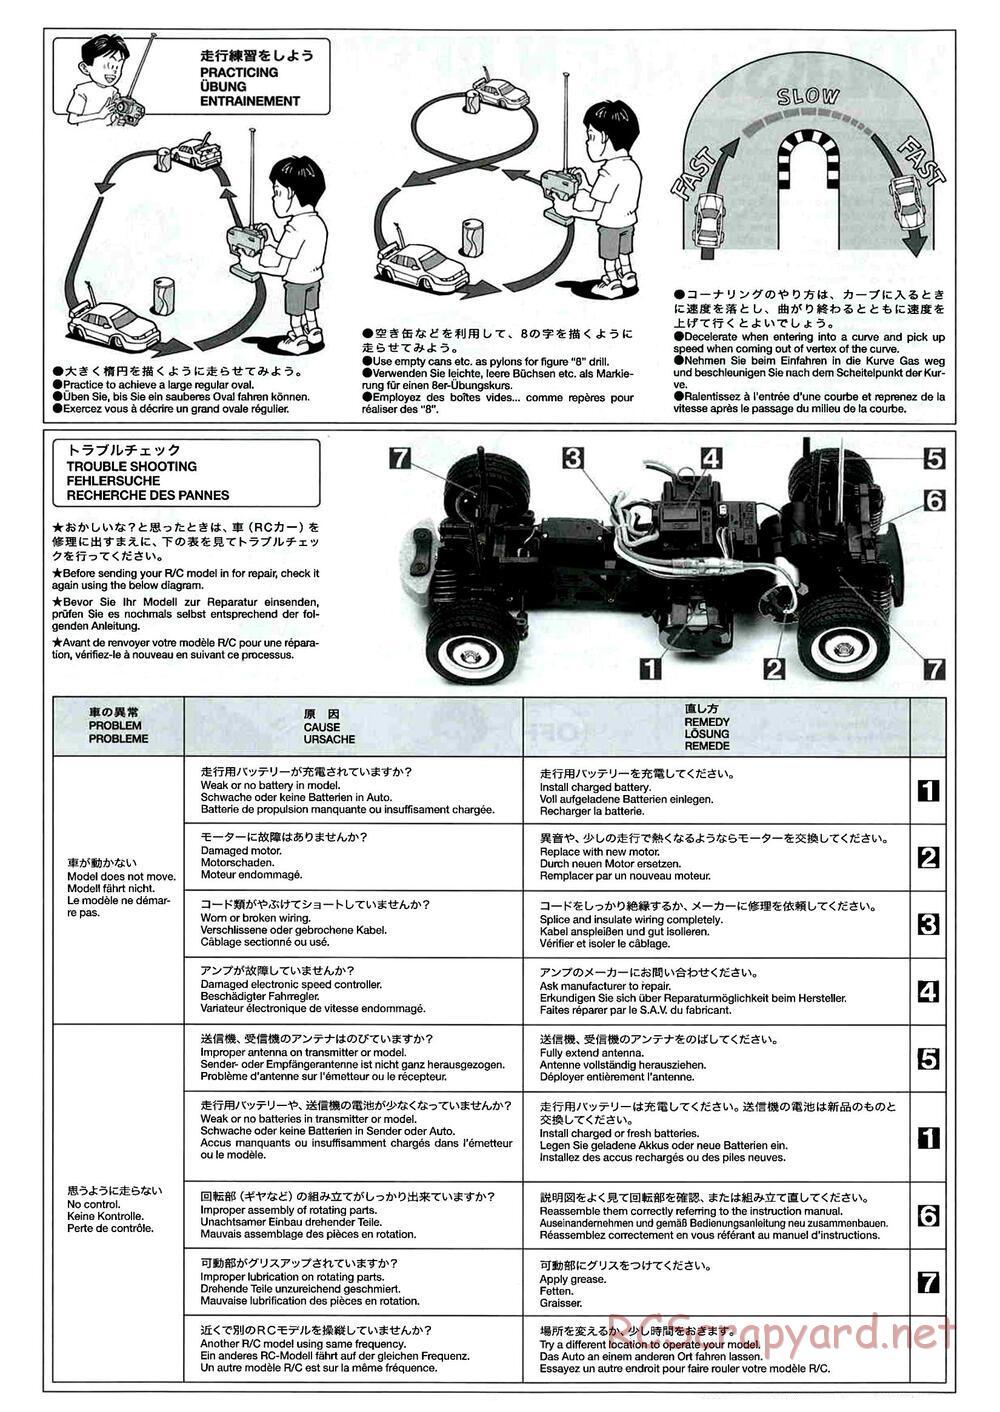 Tamiya - M-04L Chassis - Manual - Page 16